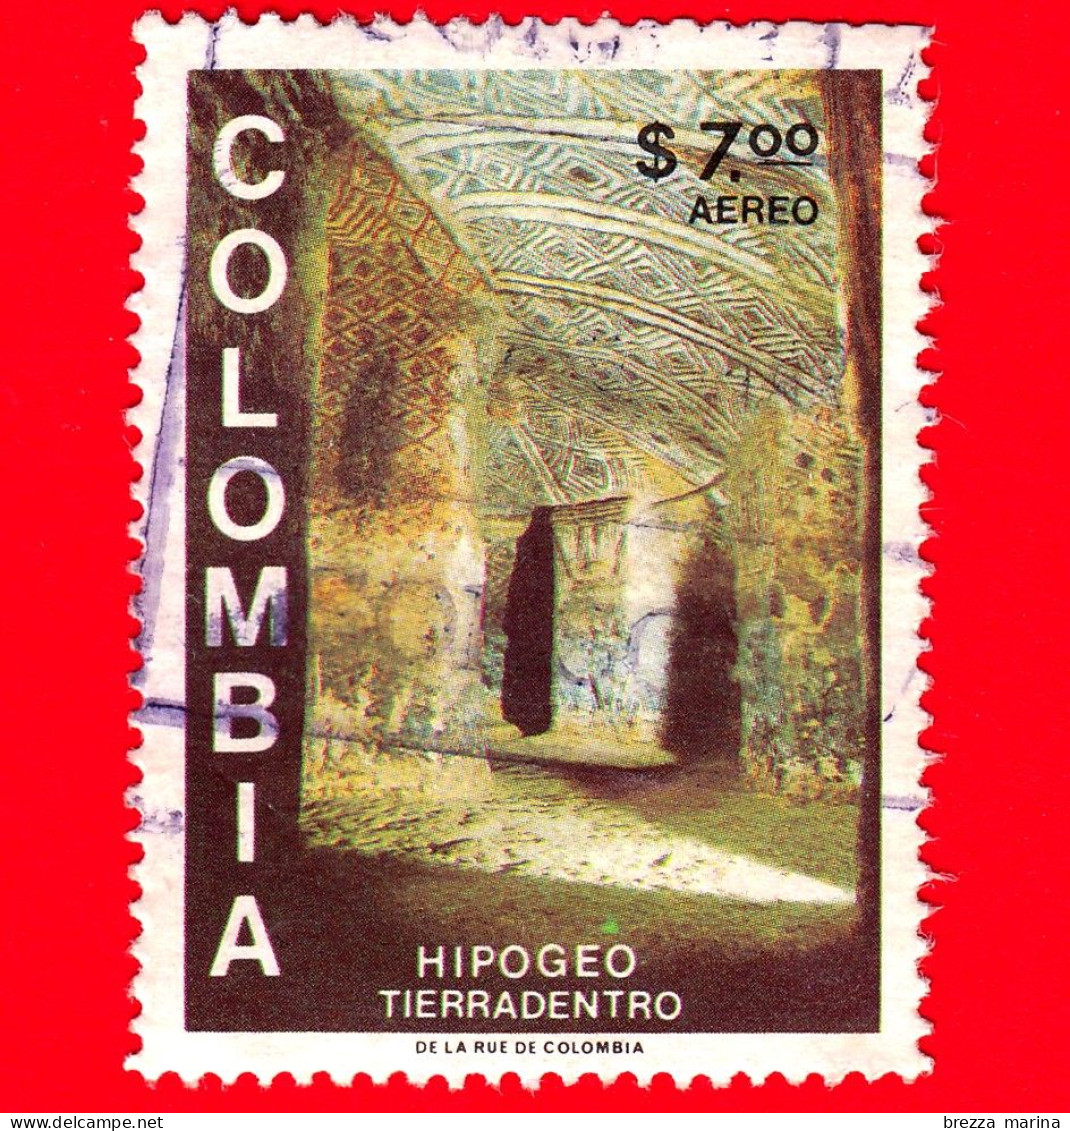 COLOMBIA - Usato - 1981 - Scoperte Archeologiche - Ipogeo In Tierradentro - 7.00 - Colombia